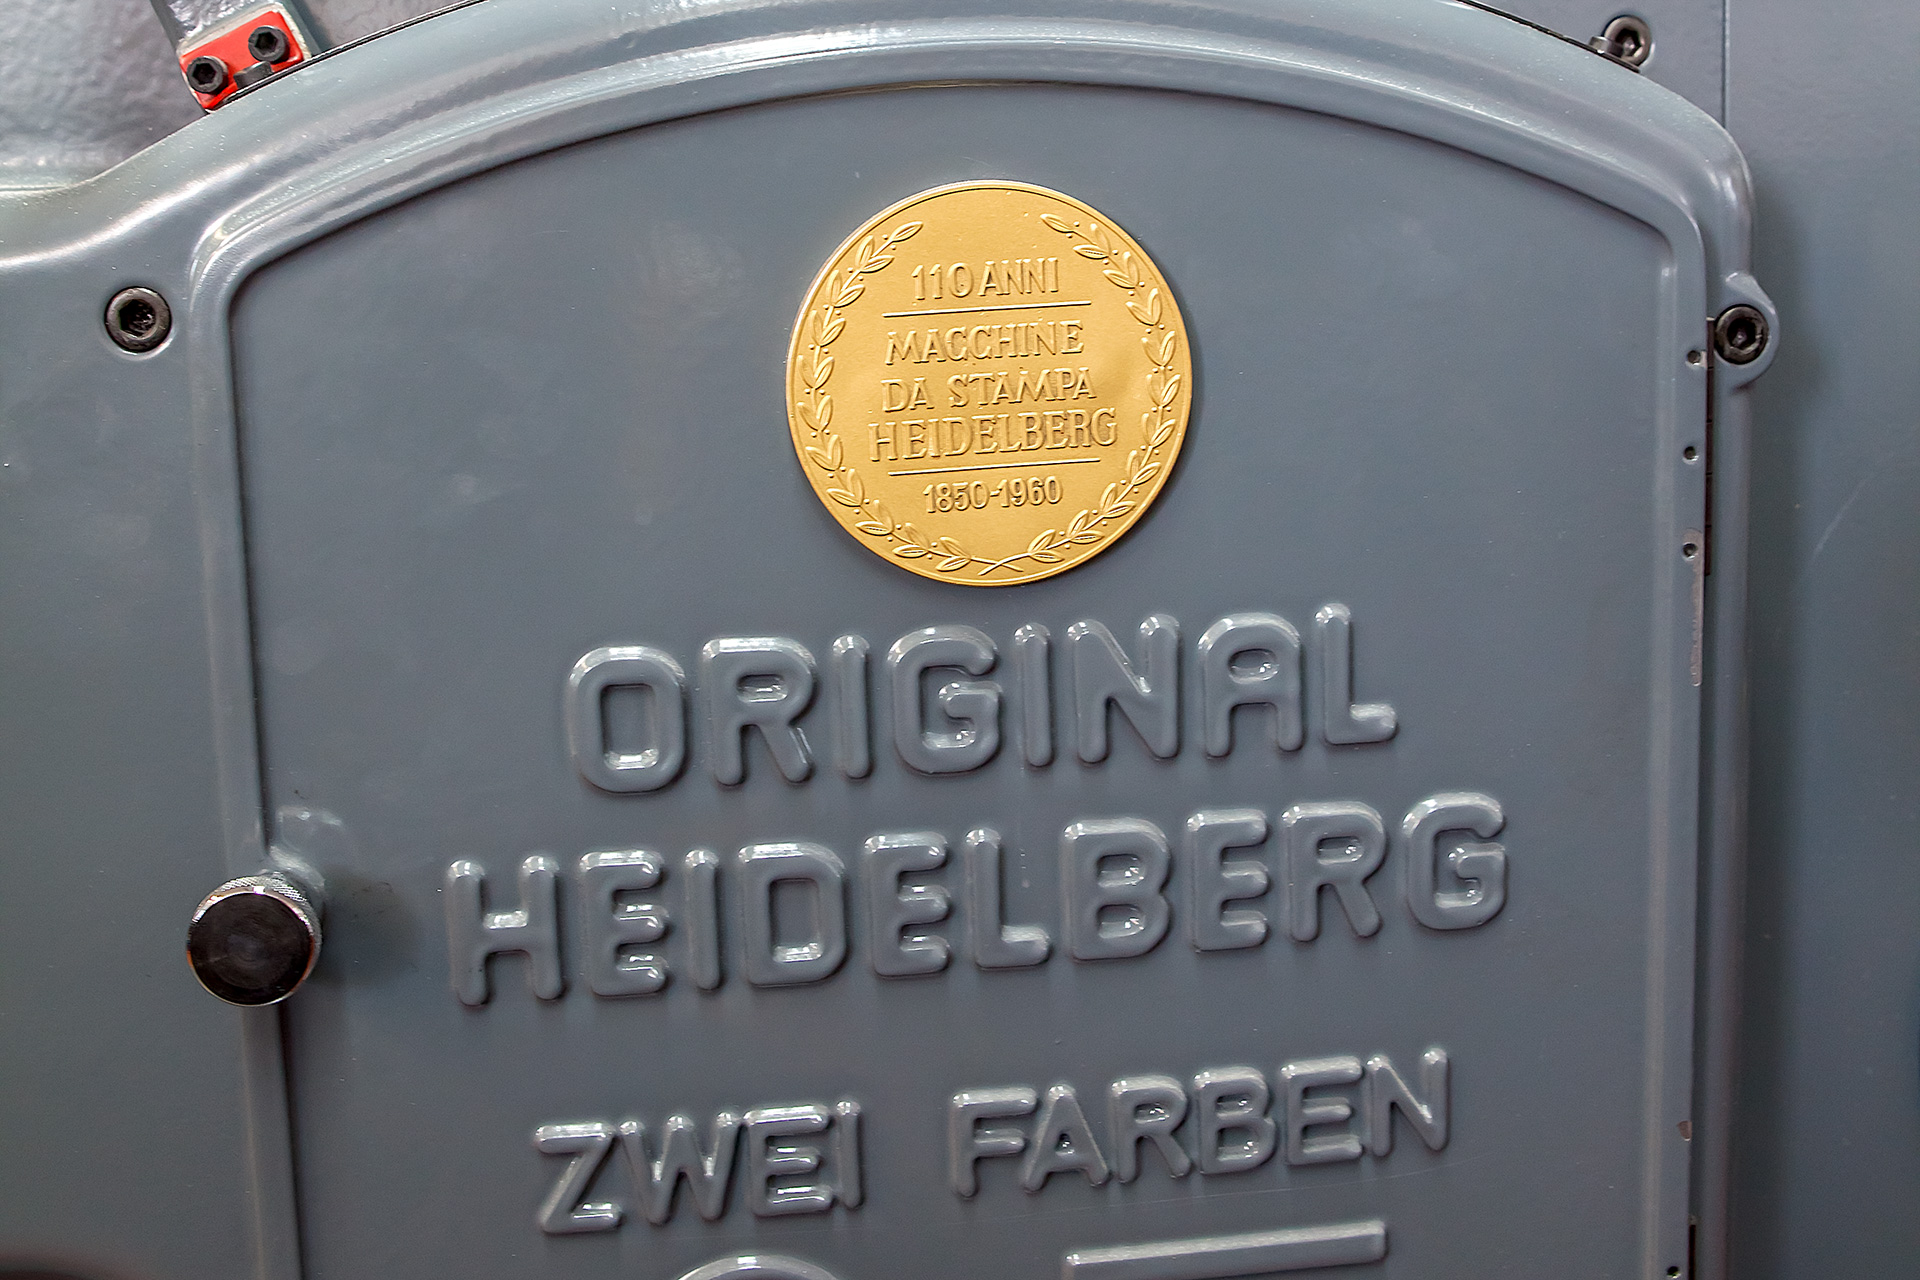 Mack - Geschichte - historische Maschine von Heidelberg